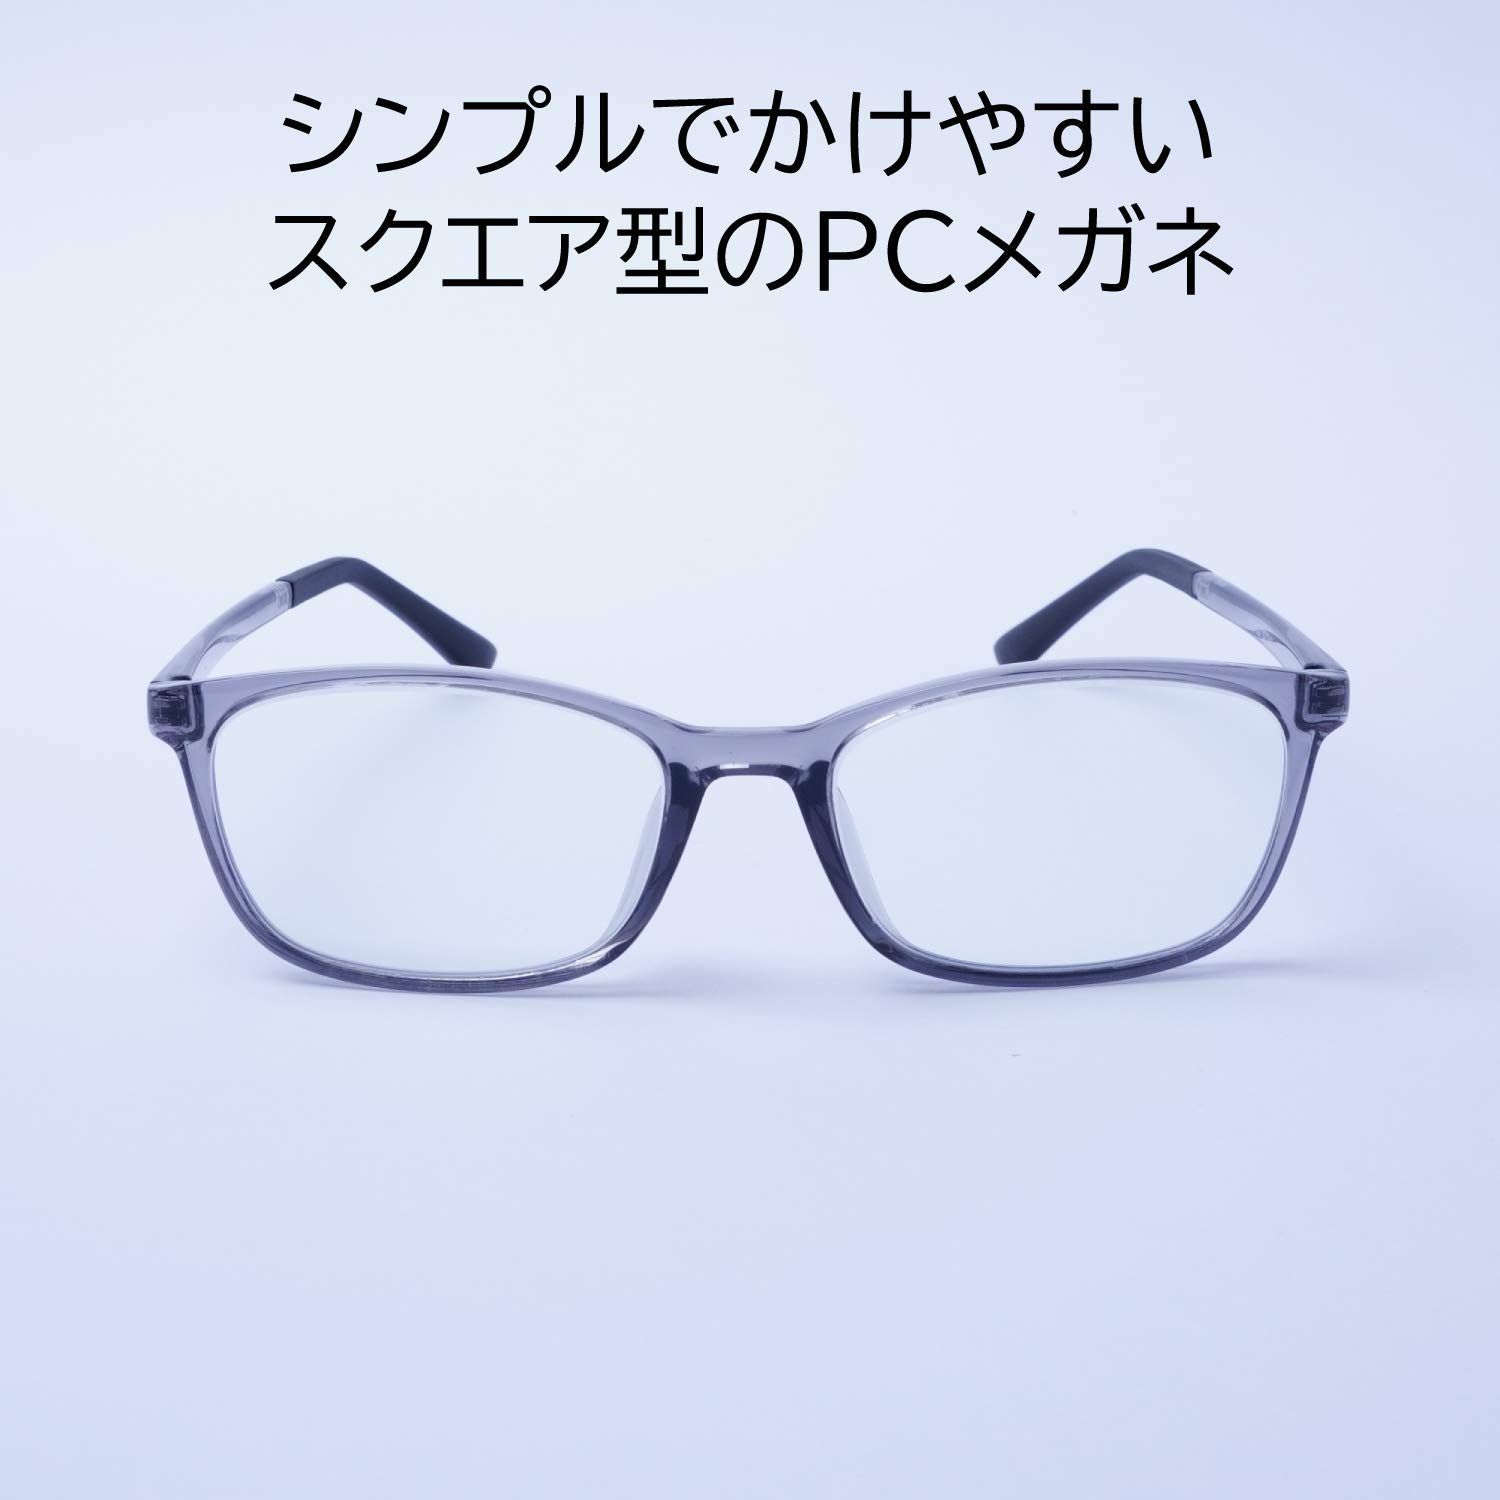 【色: クリアグレー】EVERNEVER ちゃんとしたPCメガネやや小さめ～ふつ